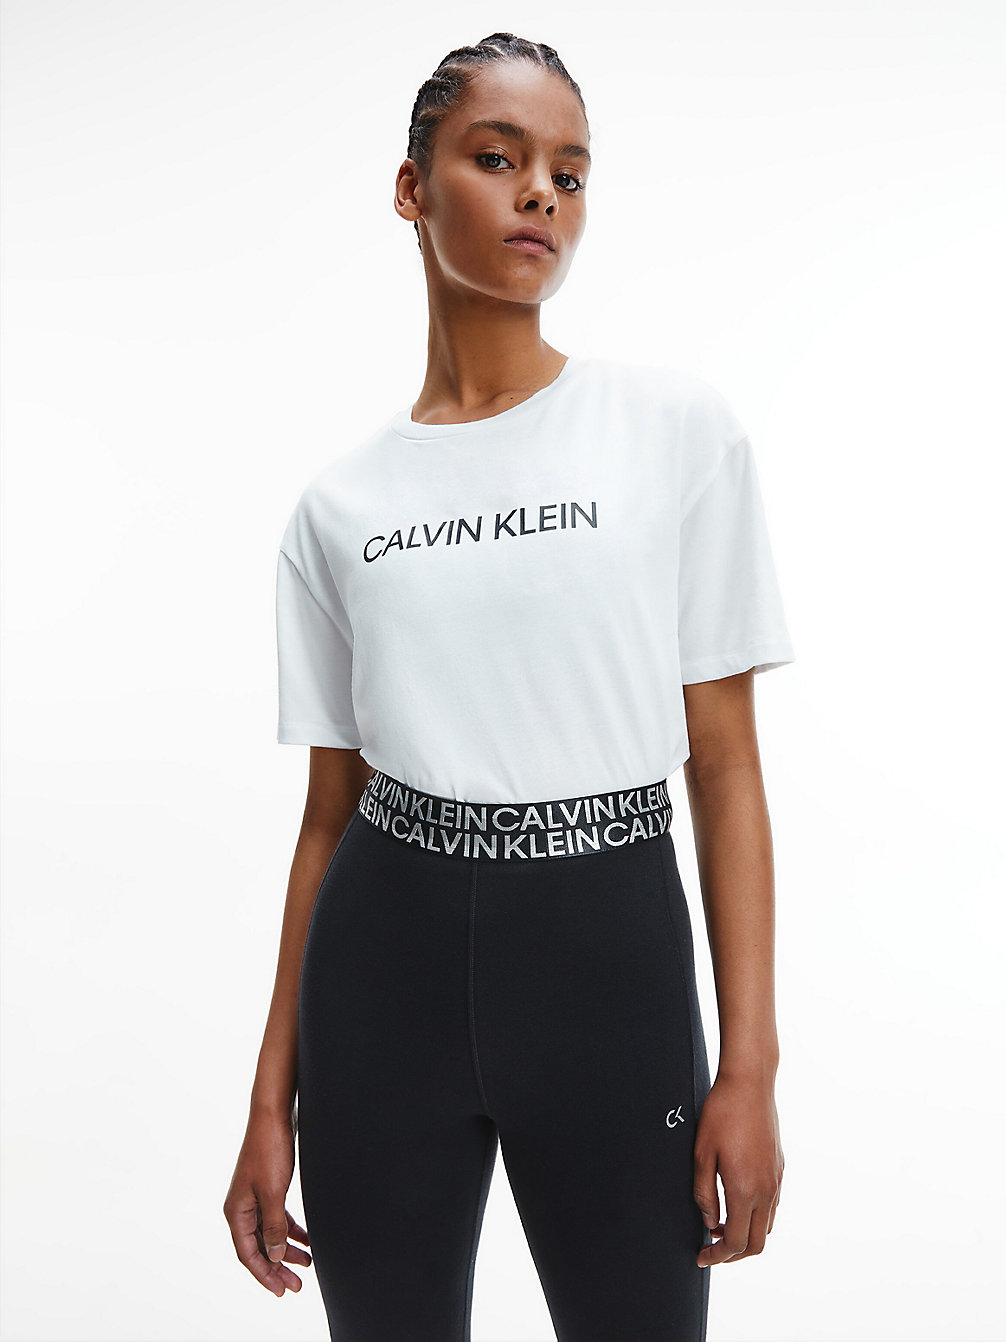 BRIGHT WHITE > Lässiges Gym-T-Shirt Mit Logo > undefined Damen - Calvin Klein